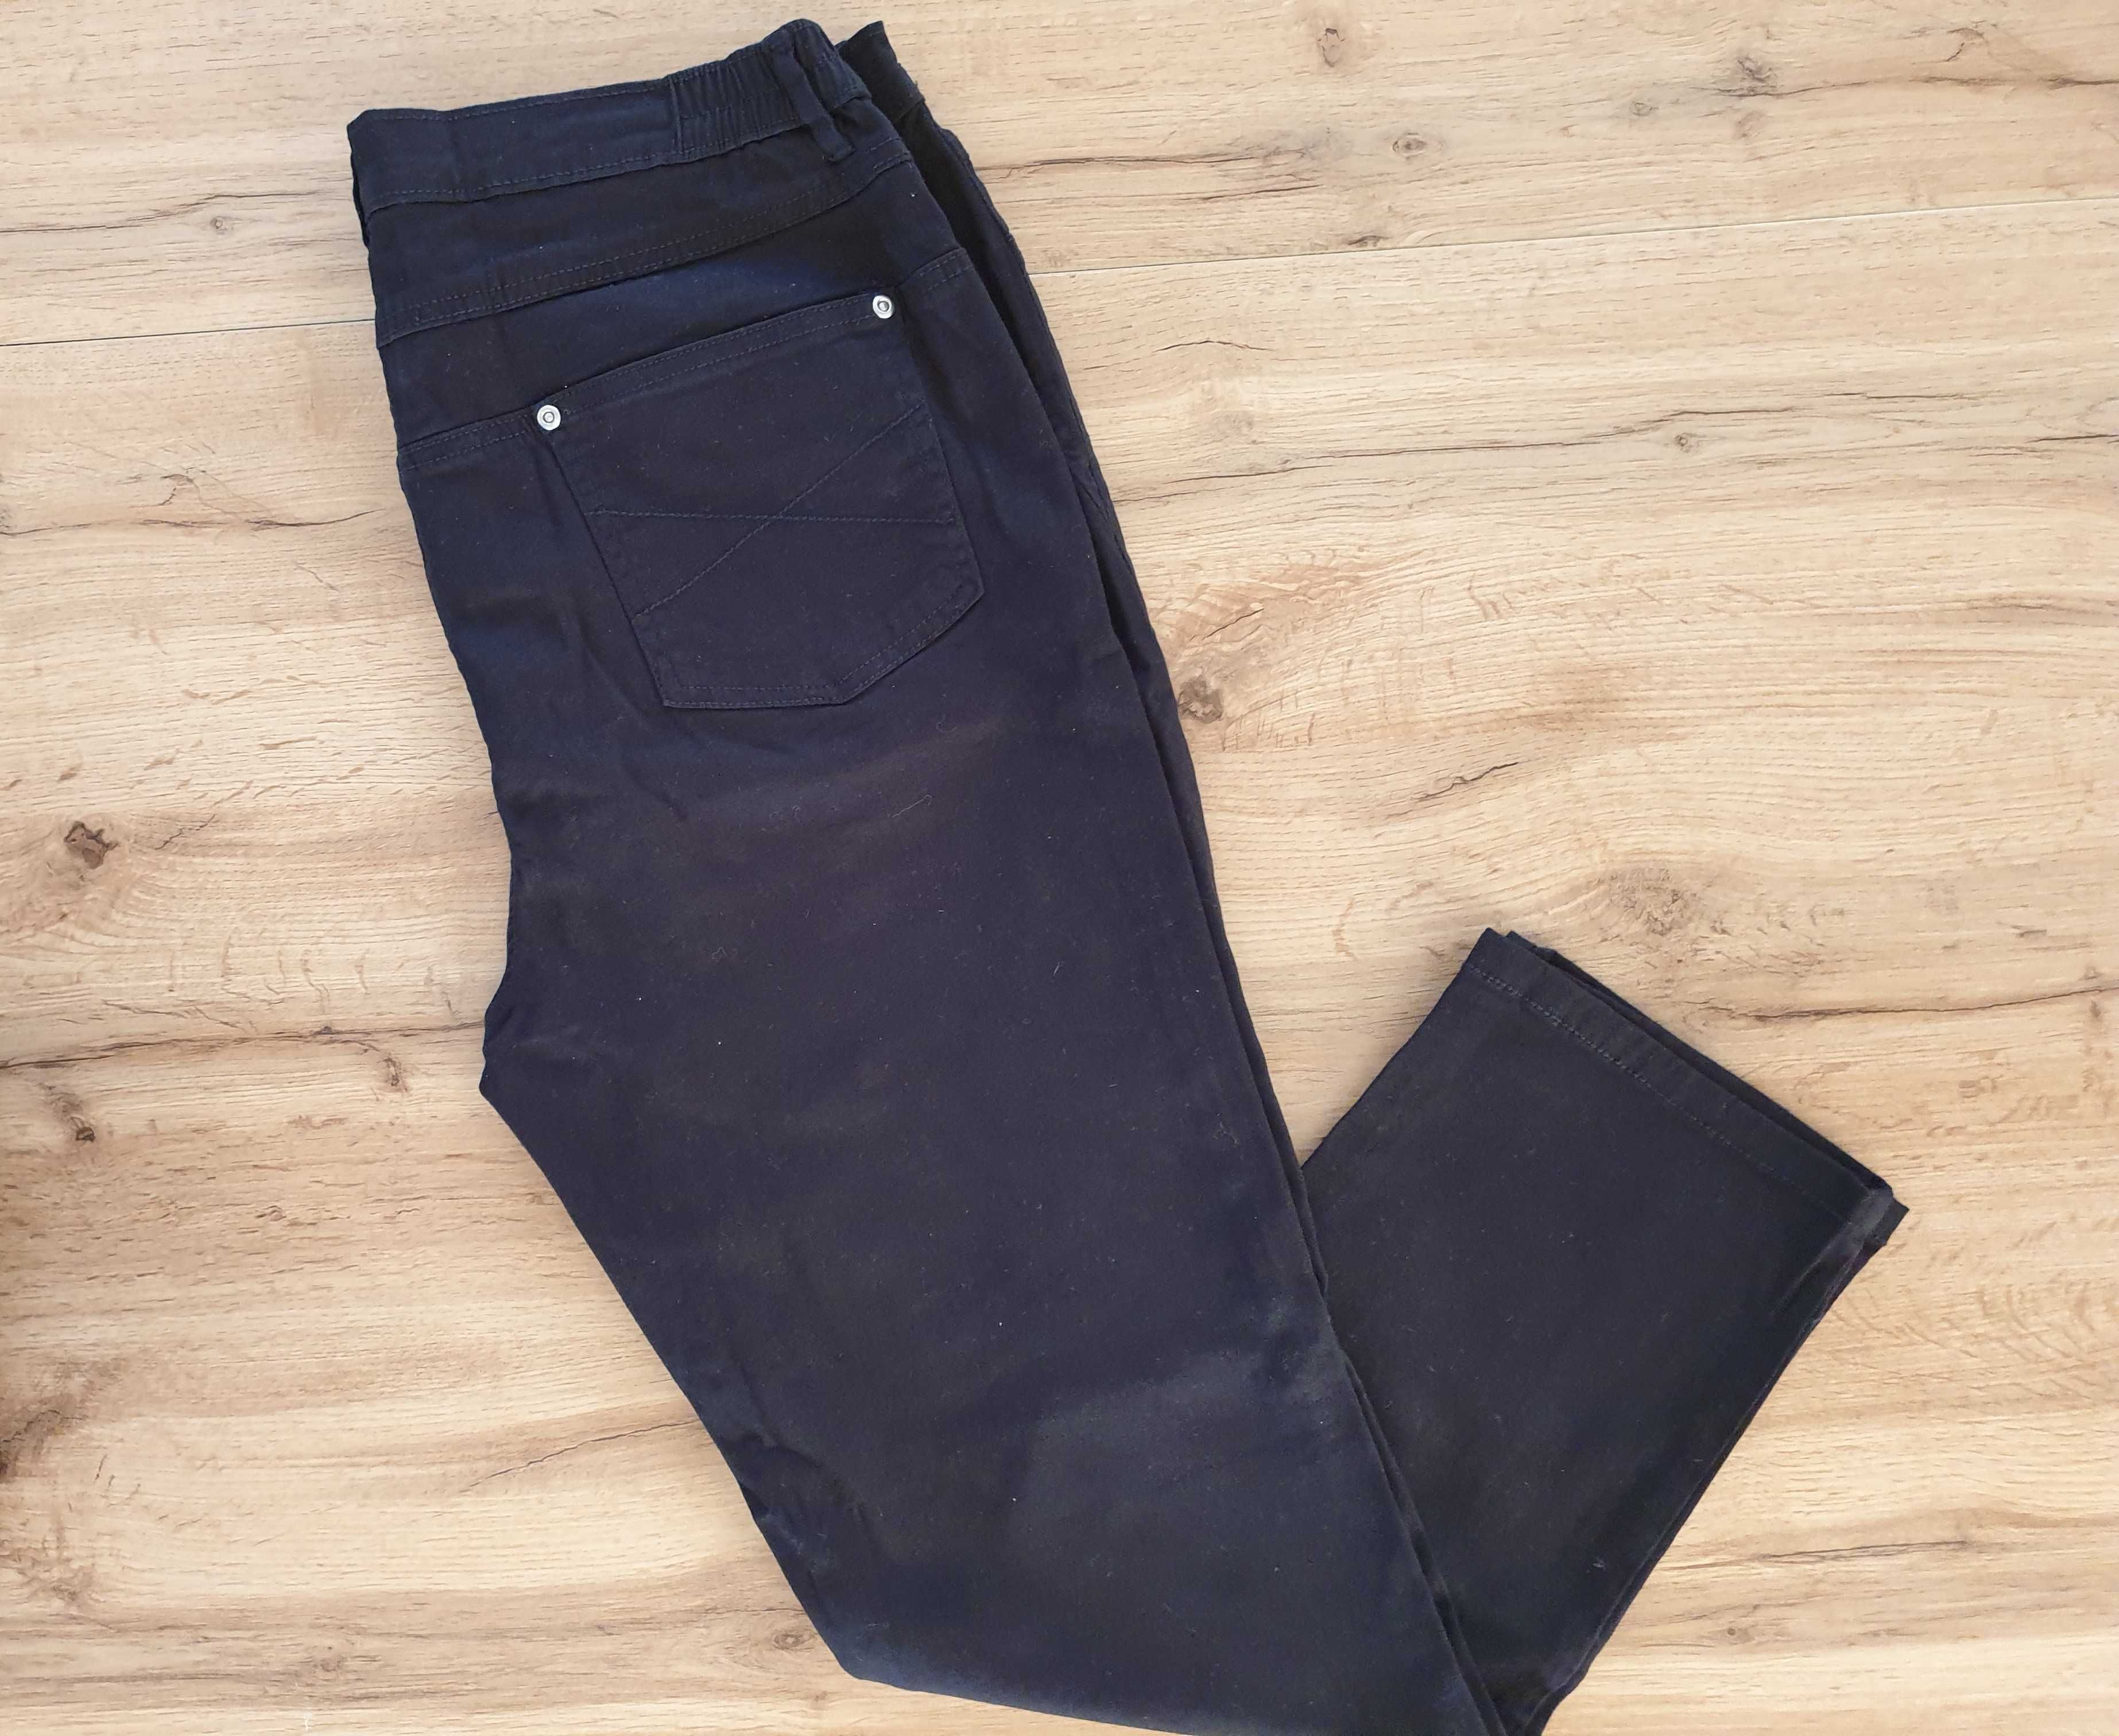 Spodnie jeansowe, czarne jeansy, 97% bawełna, rozmiar XXXL, 46